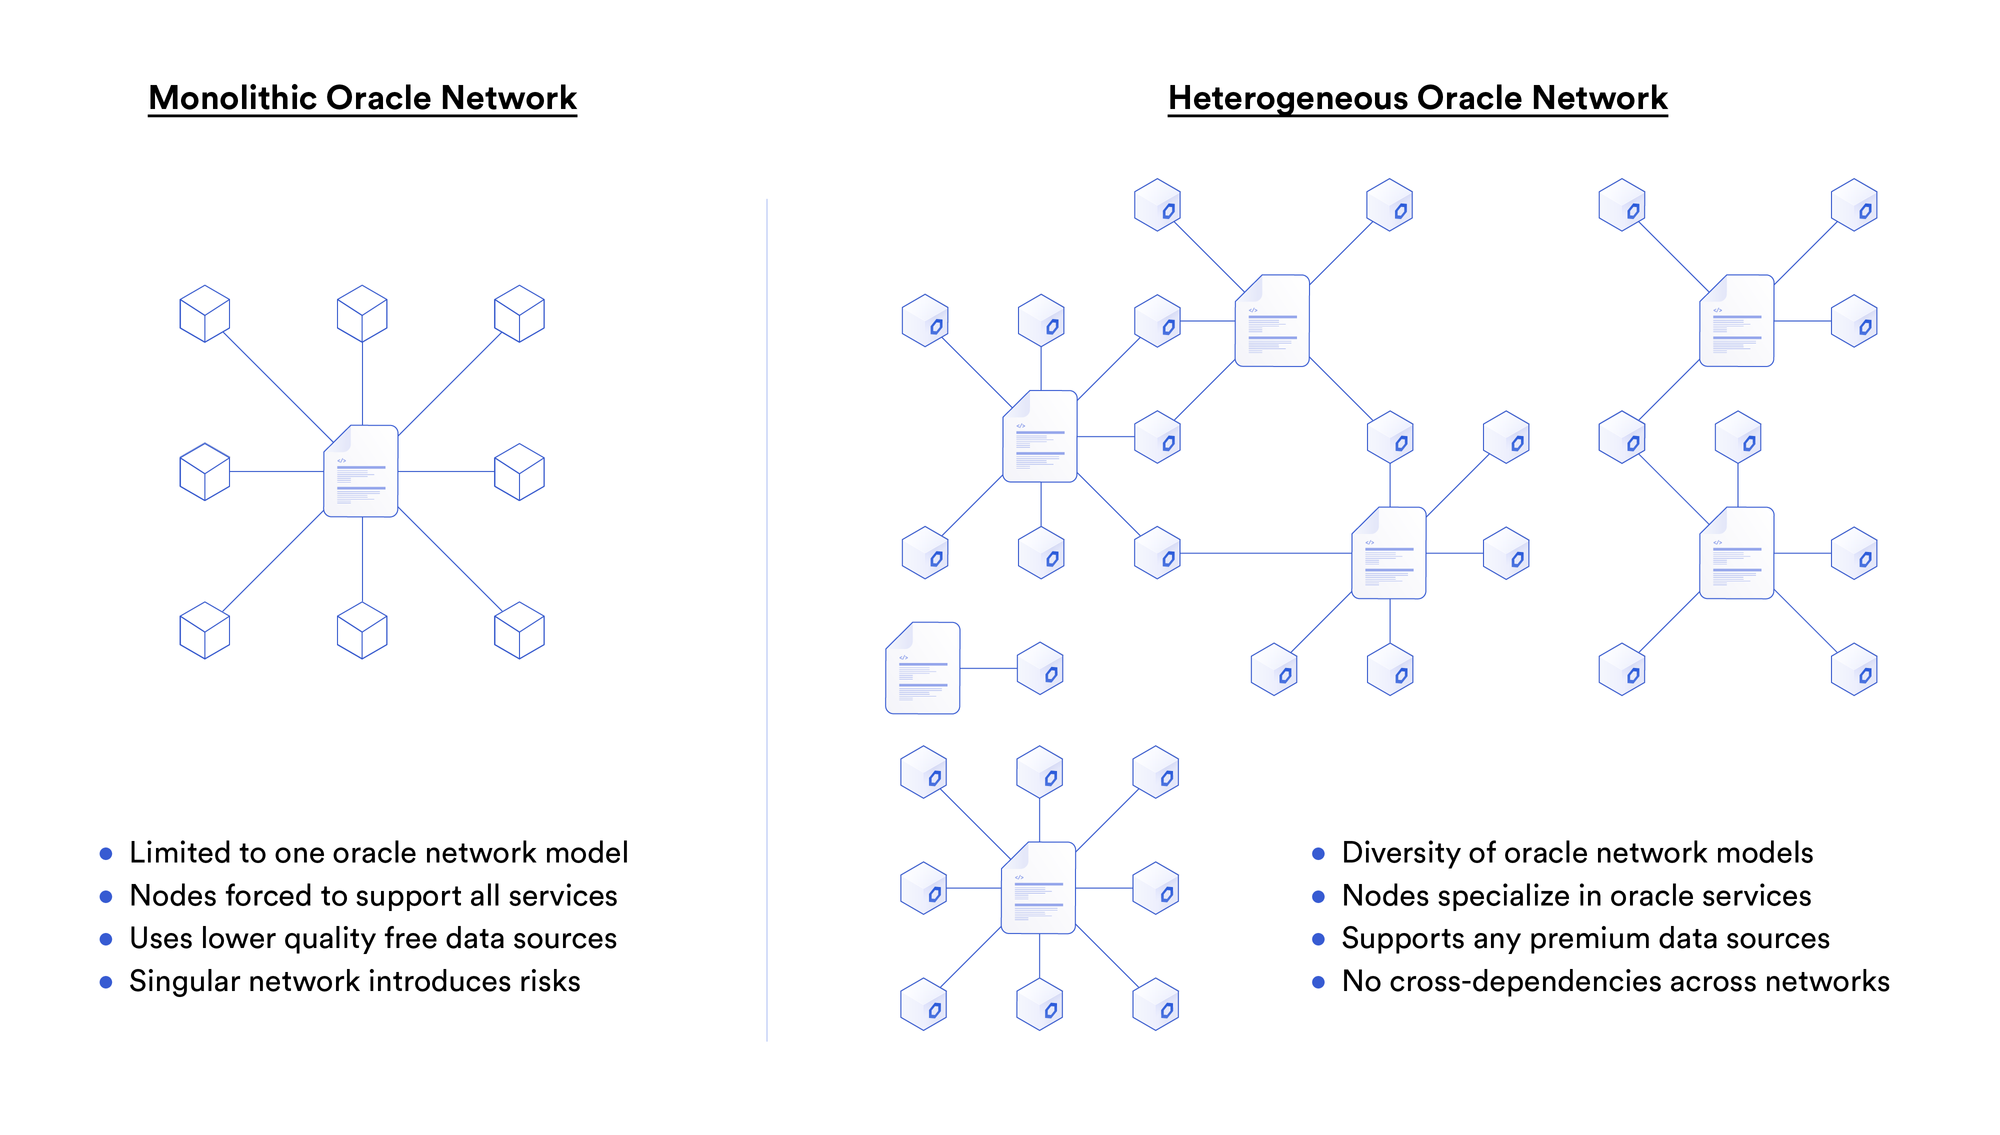 Heterogeneous Oracle Network